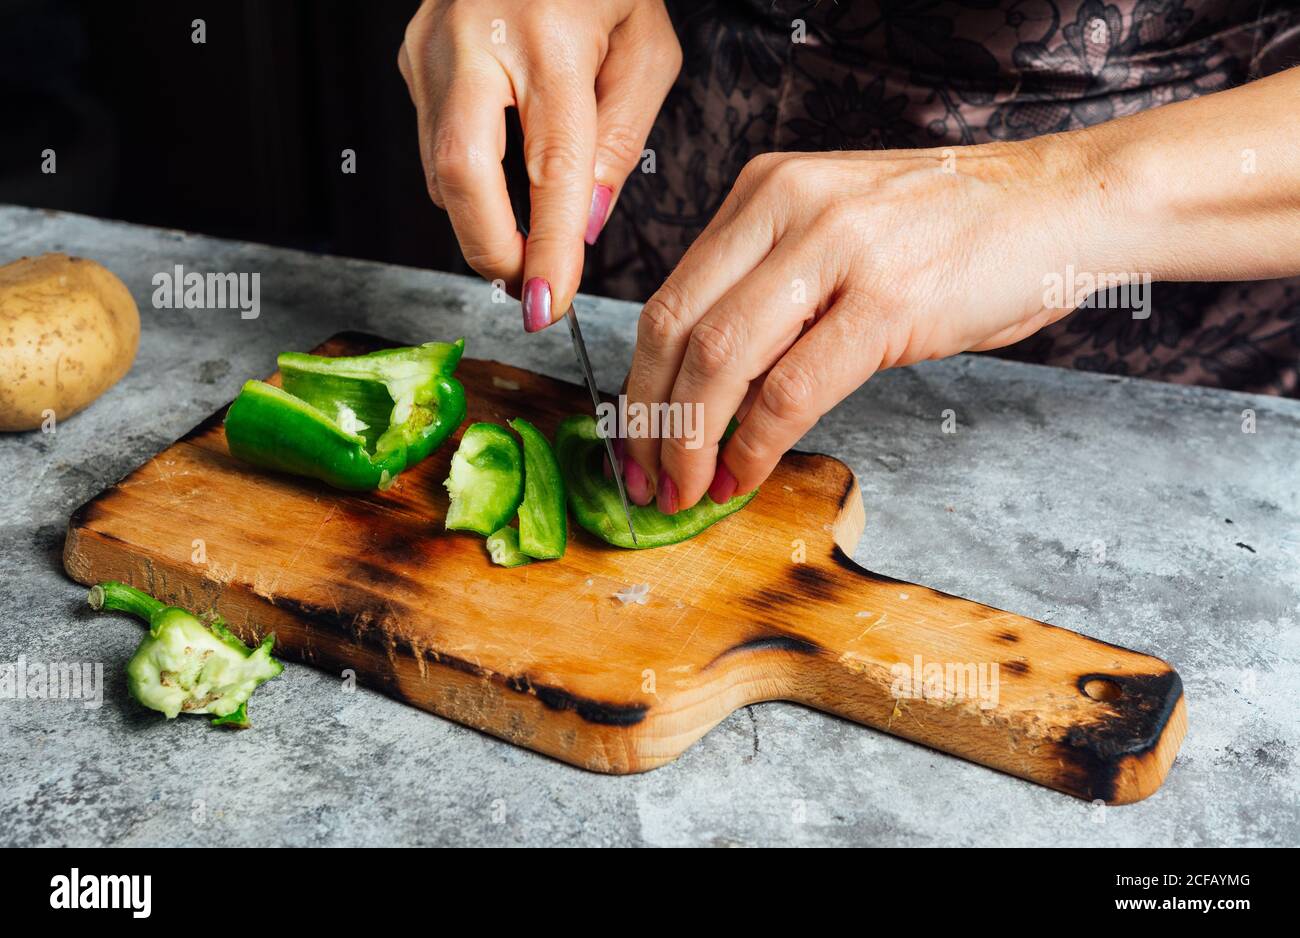 casalinga anonima che trita pepe verde fresco su tagliere di legno durante  la preparazione degli ingredienti per una cena nutriente Foto stock - Alamy